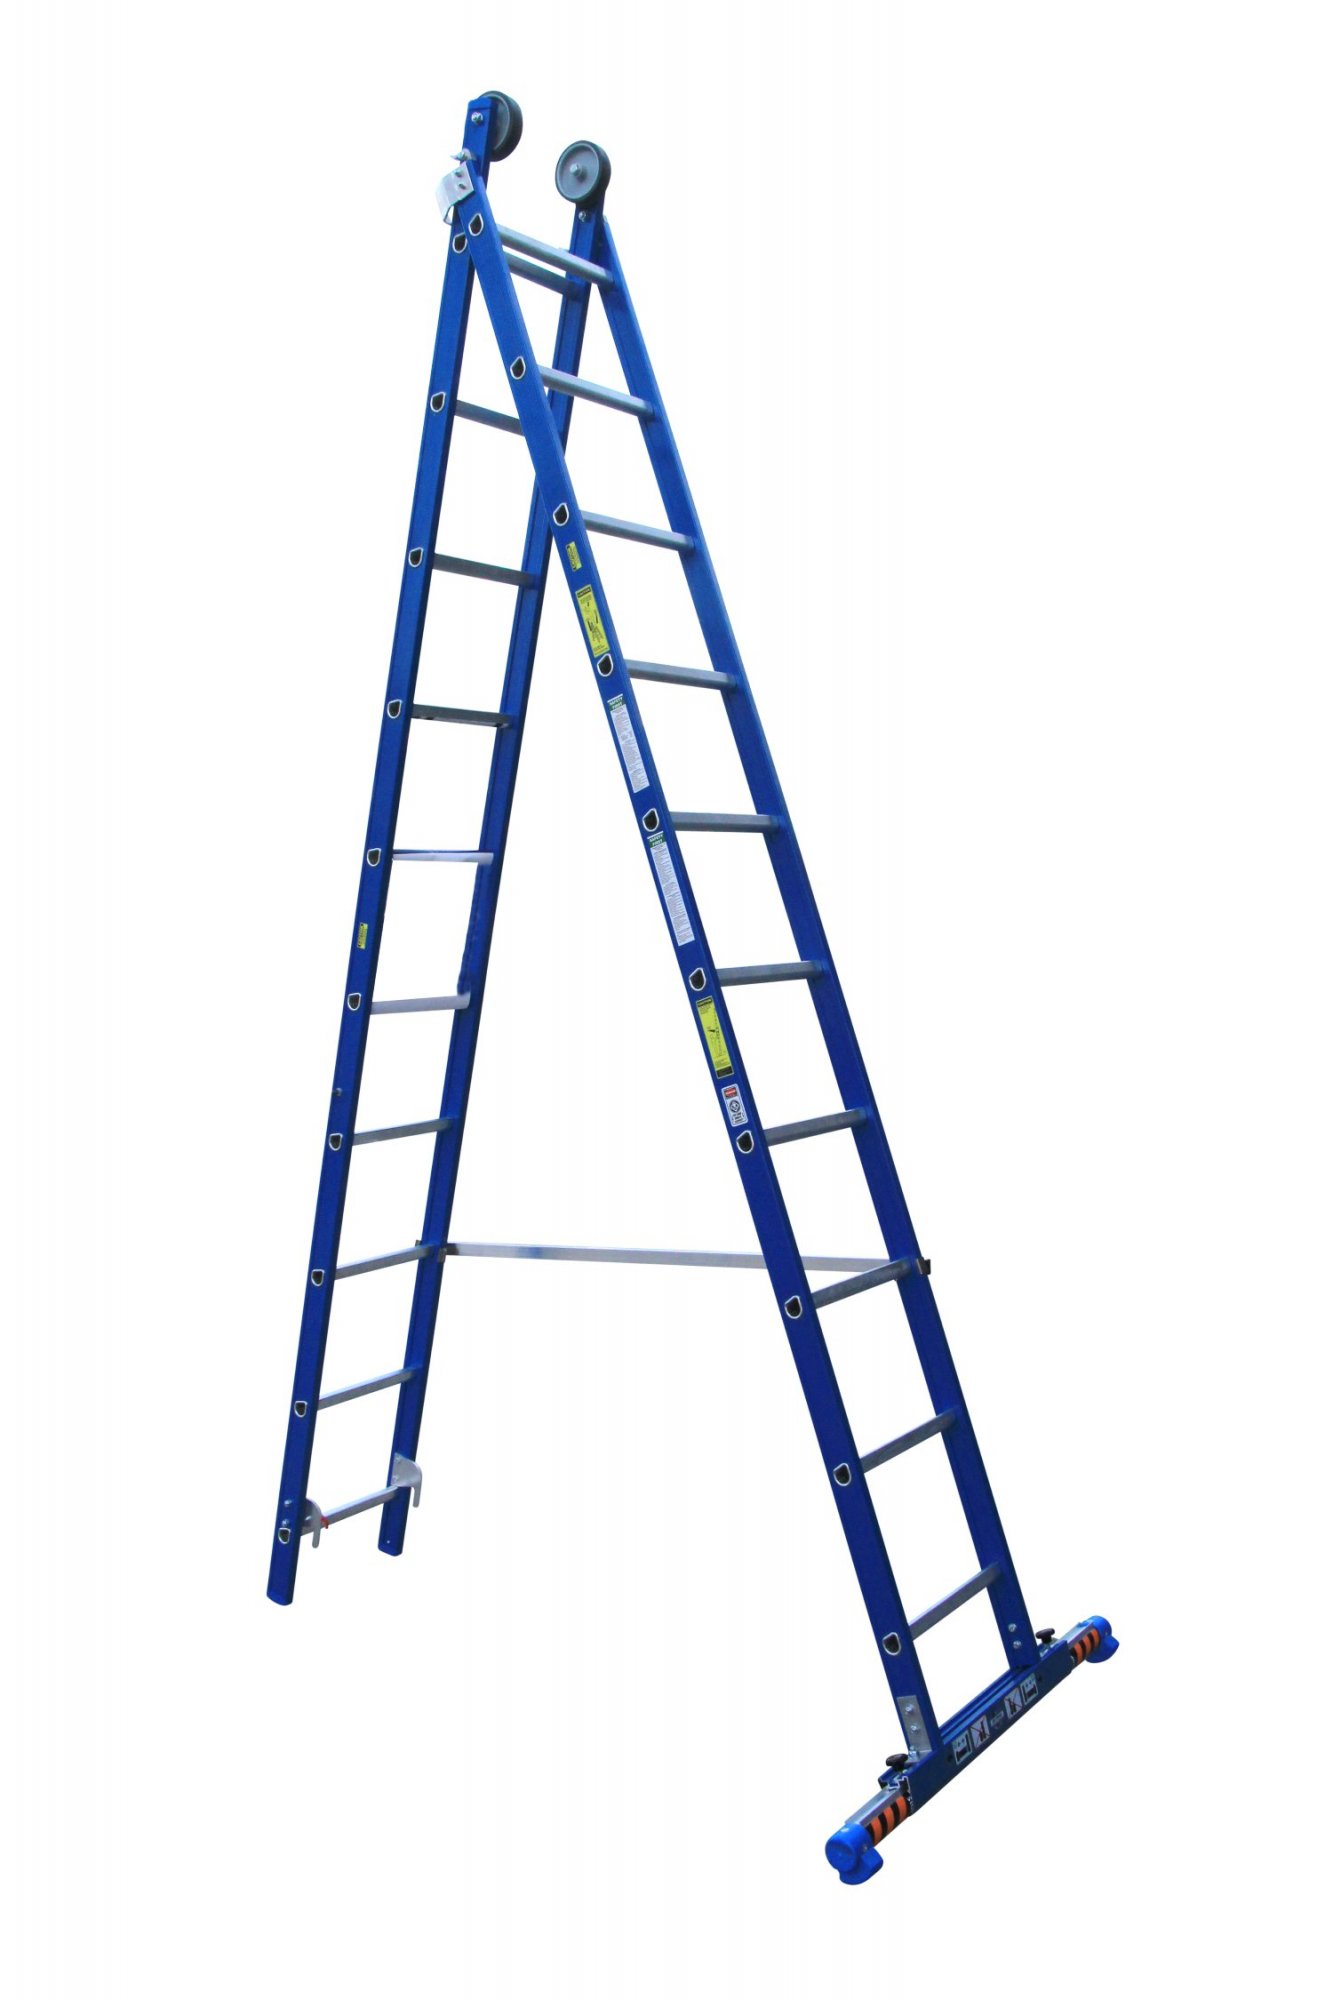 ASC 990609612 XD Ladder 2x14 niveaus - recht met stabilisatiebalk